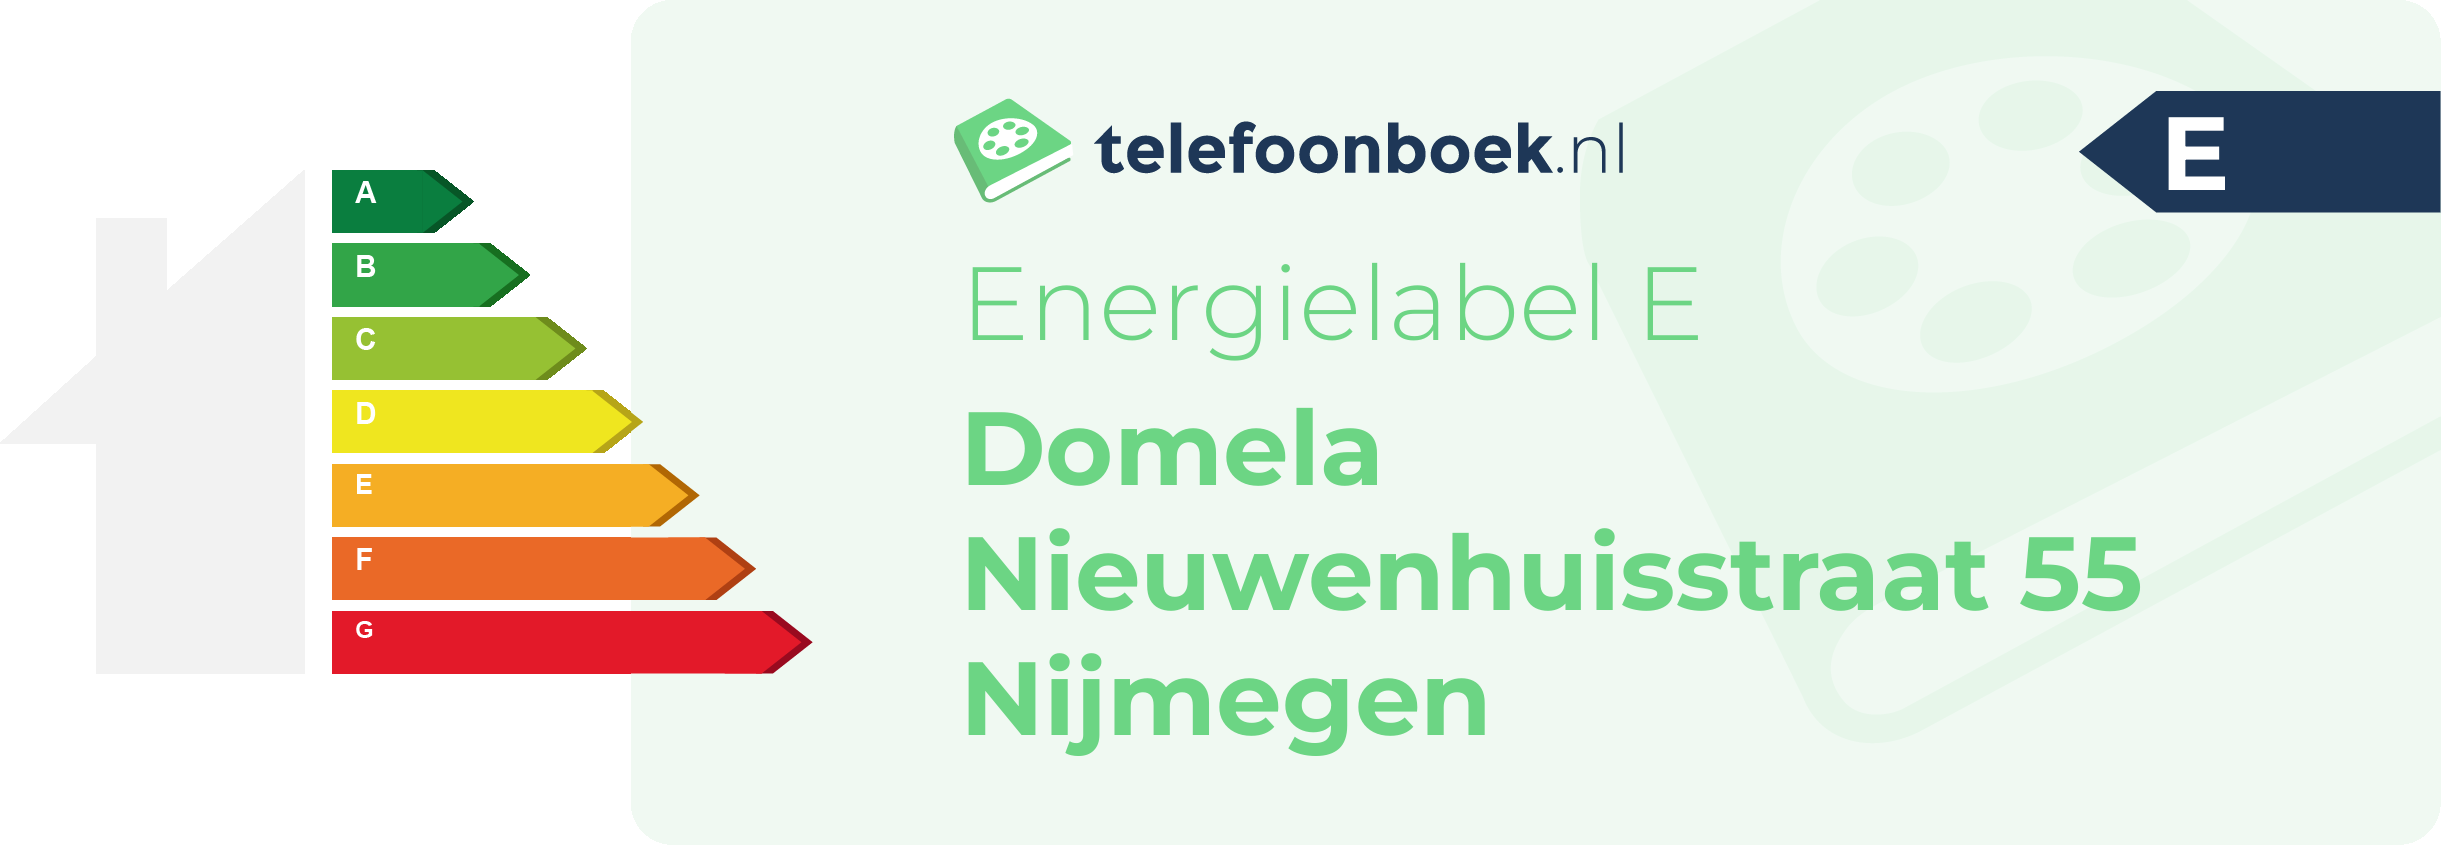 Energielabel Domela Nieuwenhuisstraat 55 Nijmegen